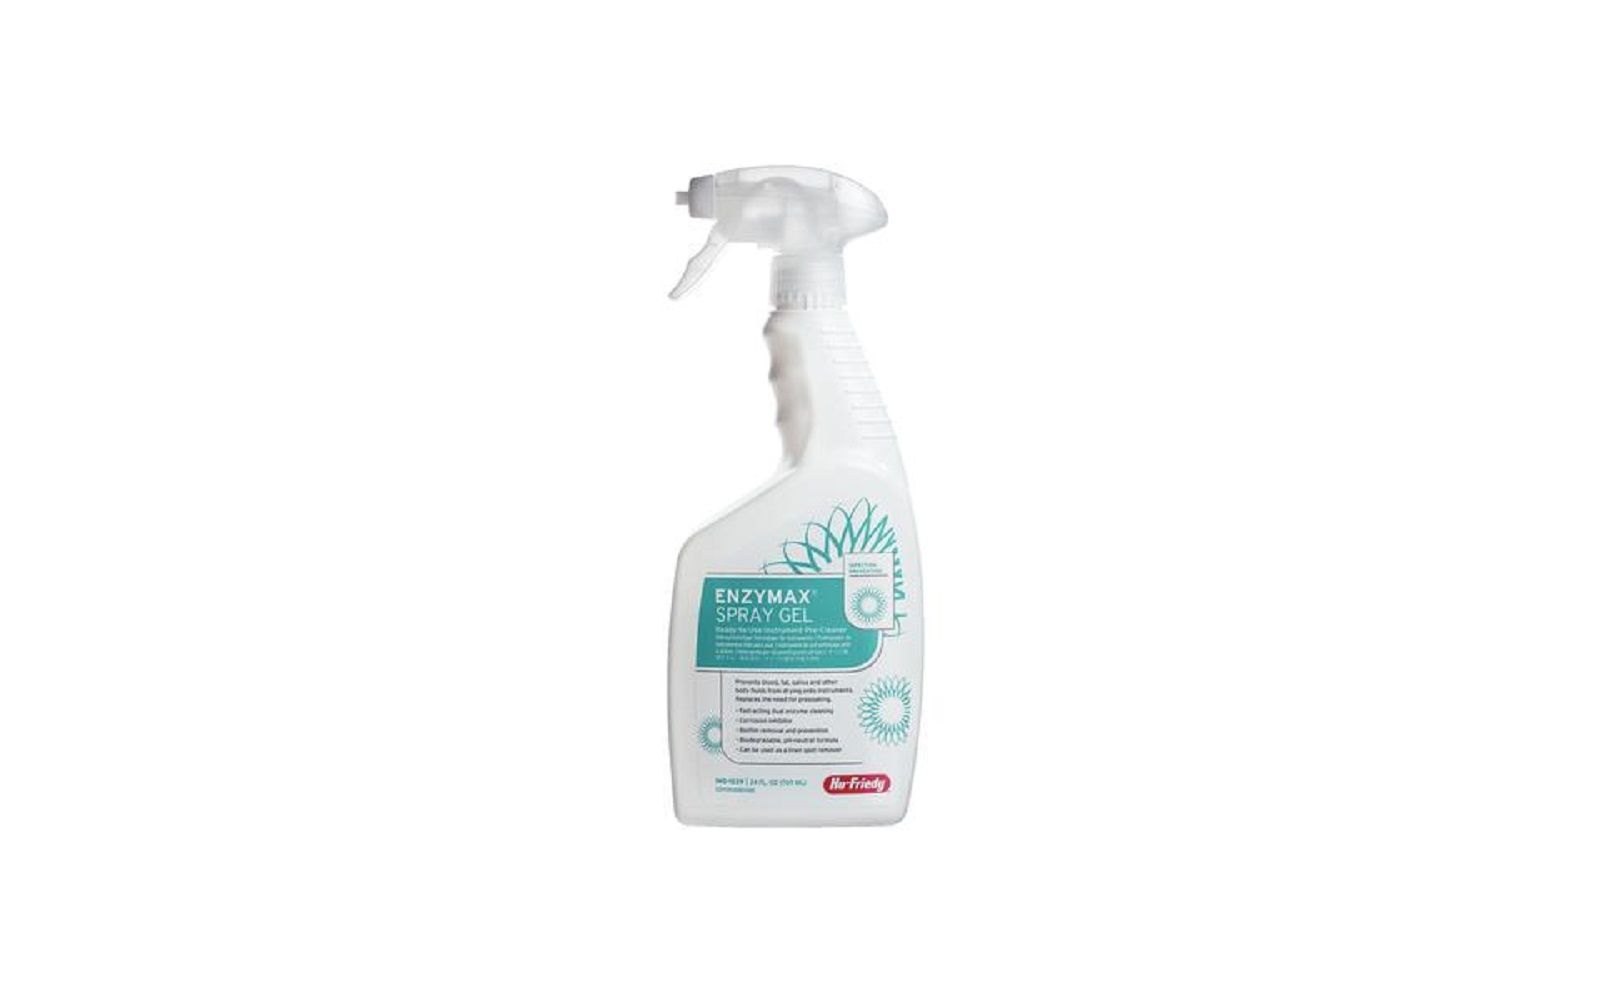 Enzymax® detergent – spray gel, 24 oz bottle